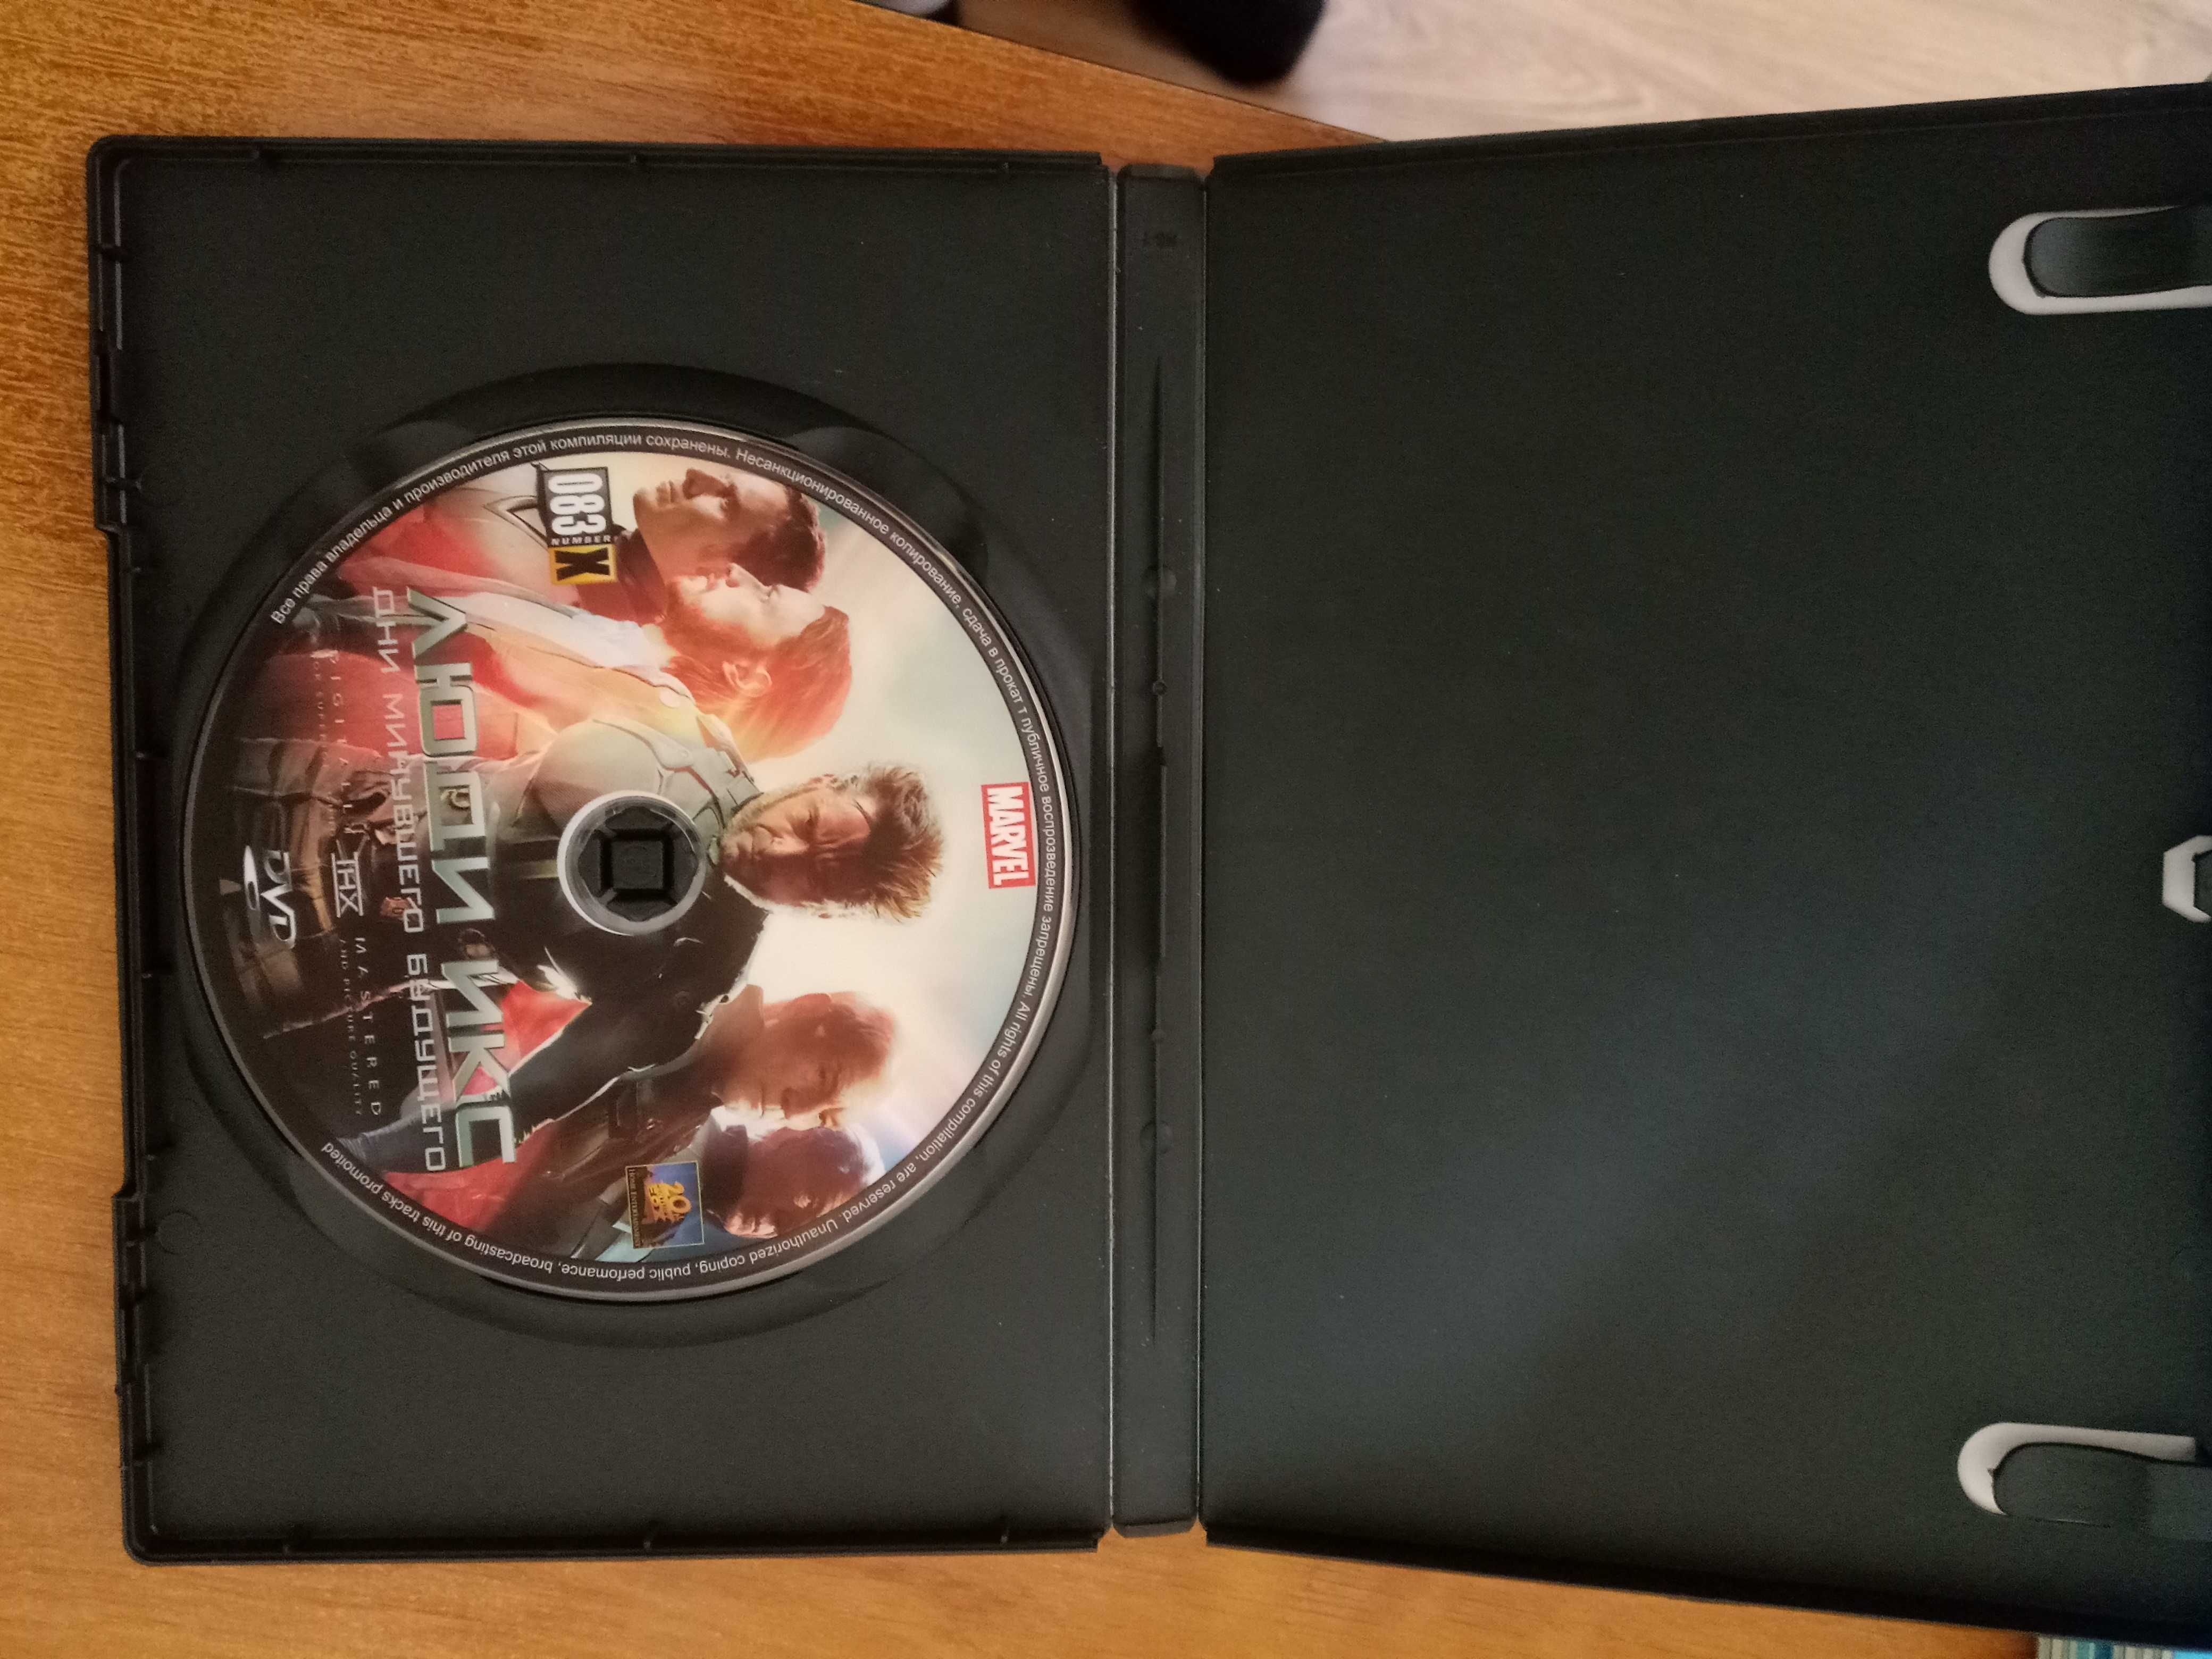 Продается DVD диск с фильмом (см фото).Цена 10 тыс